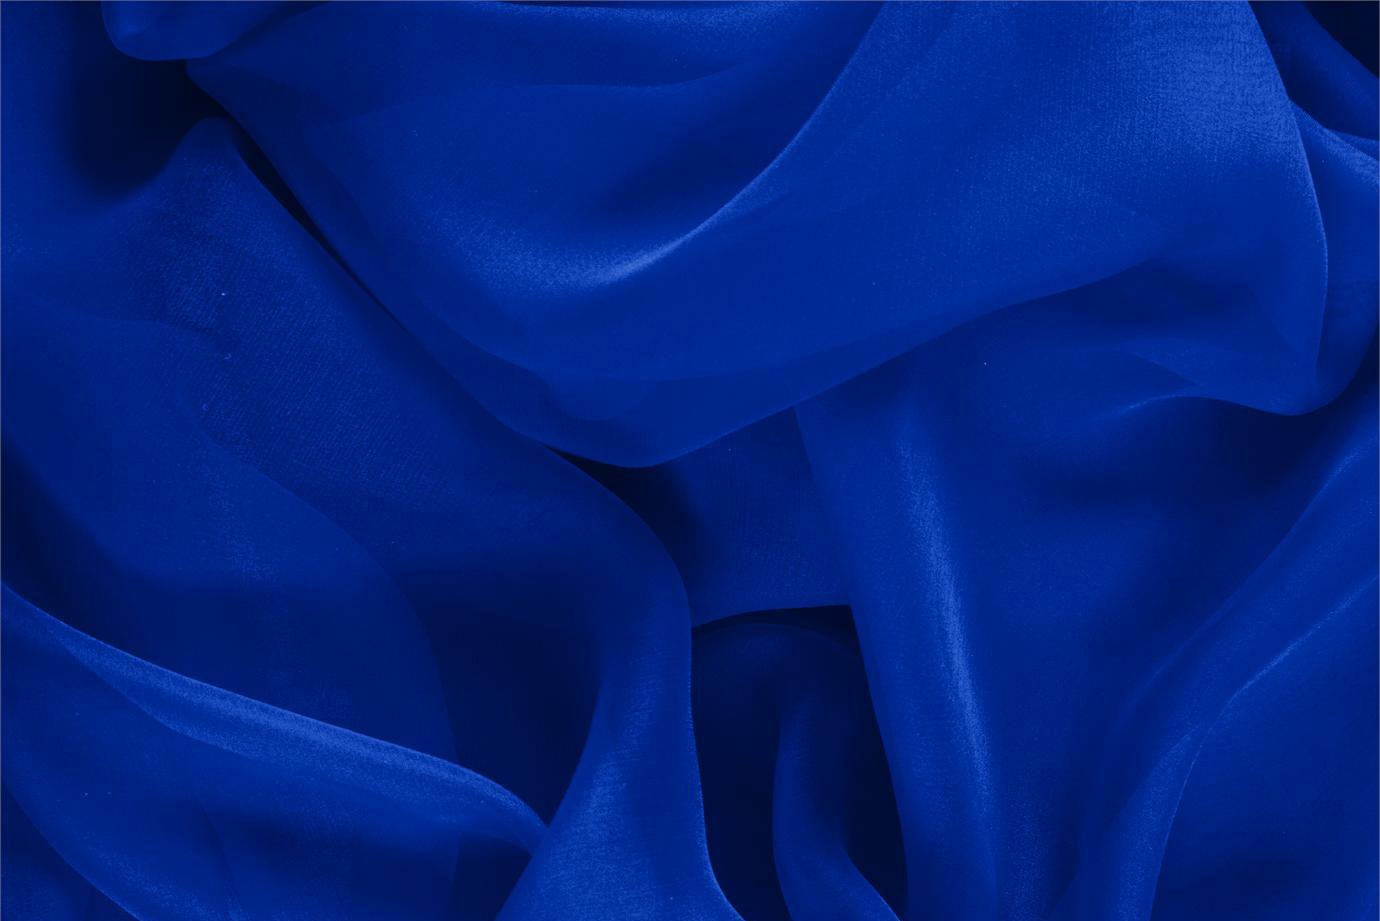 Tissu Couture Chiffon Bleu électrique en Soie UN000529